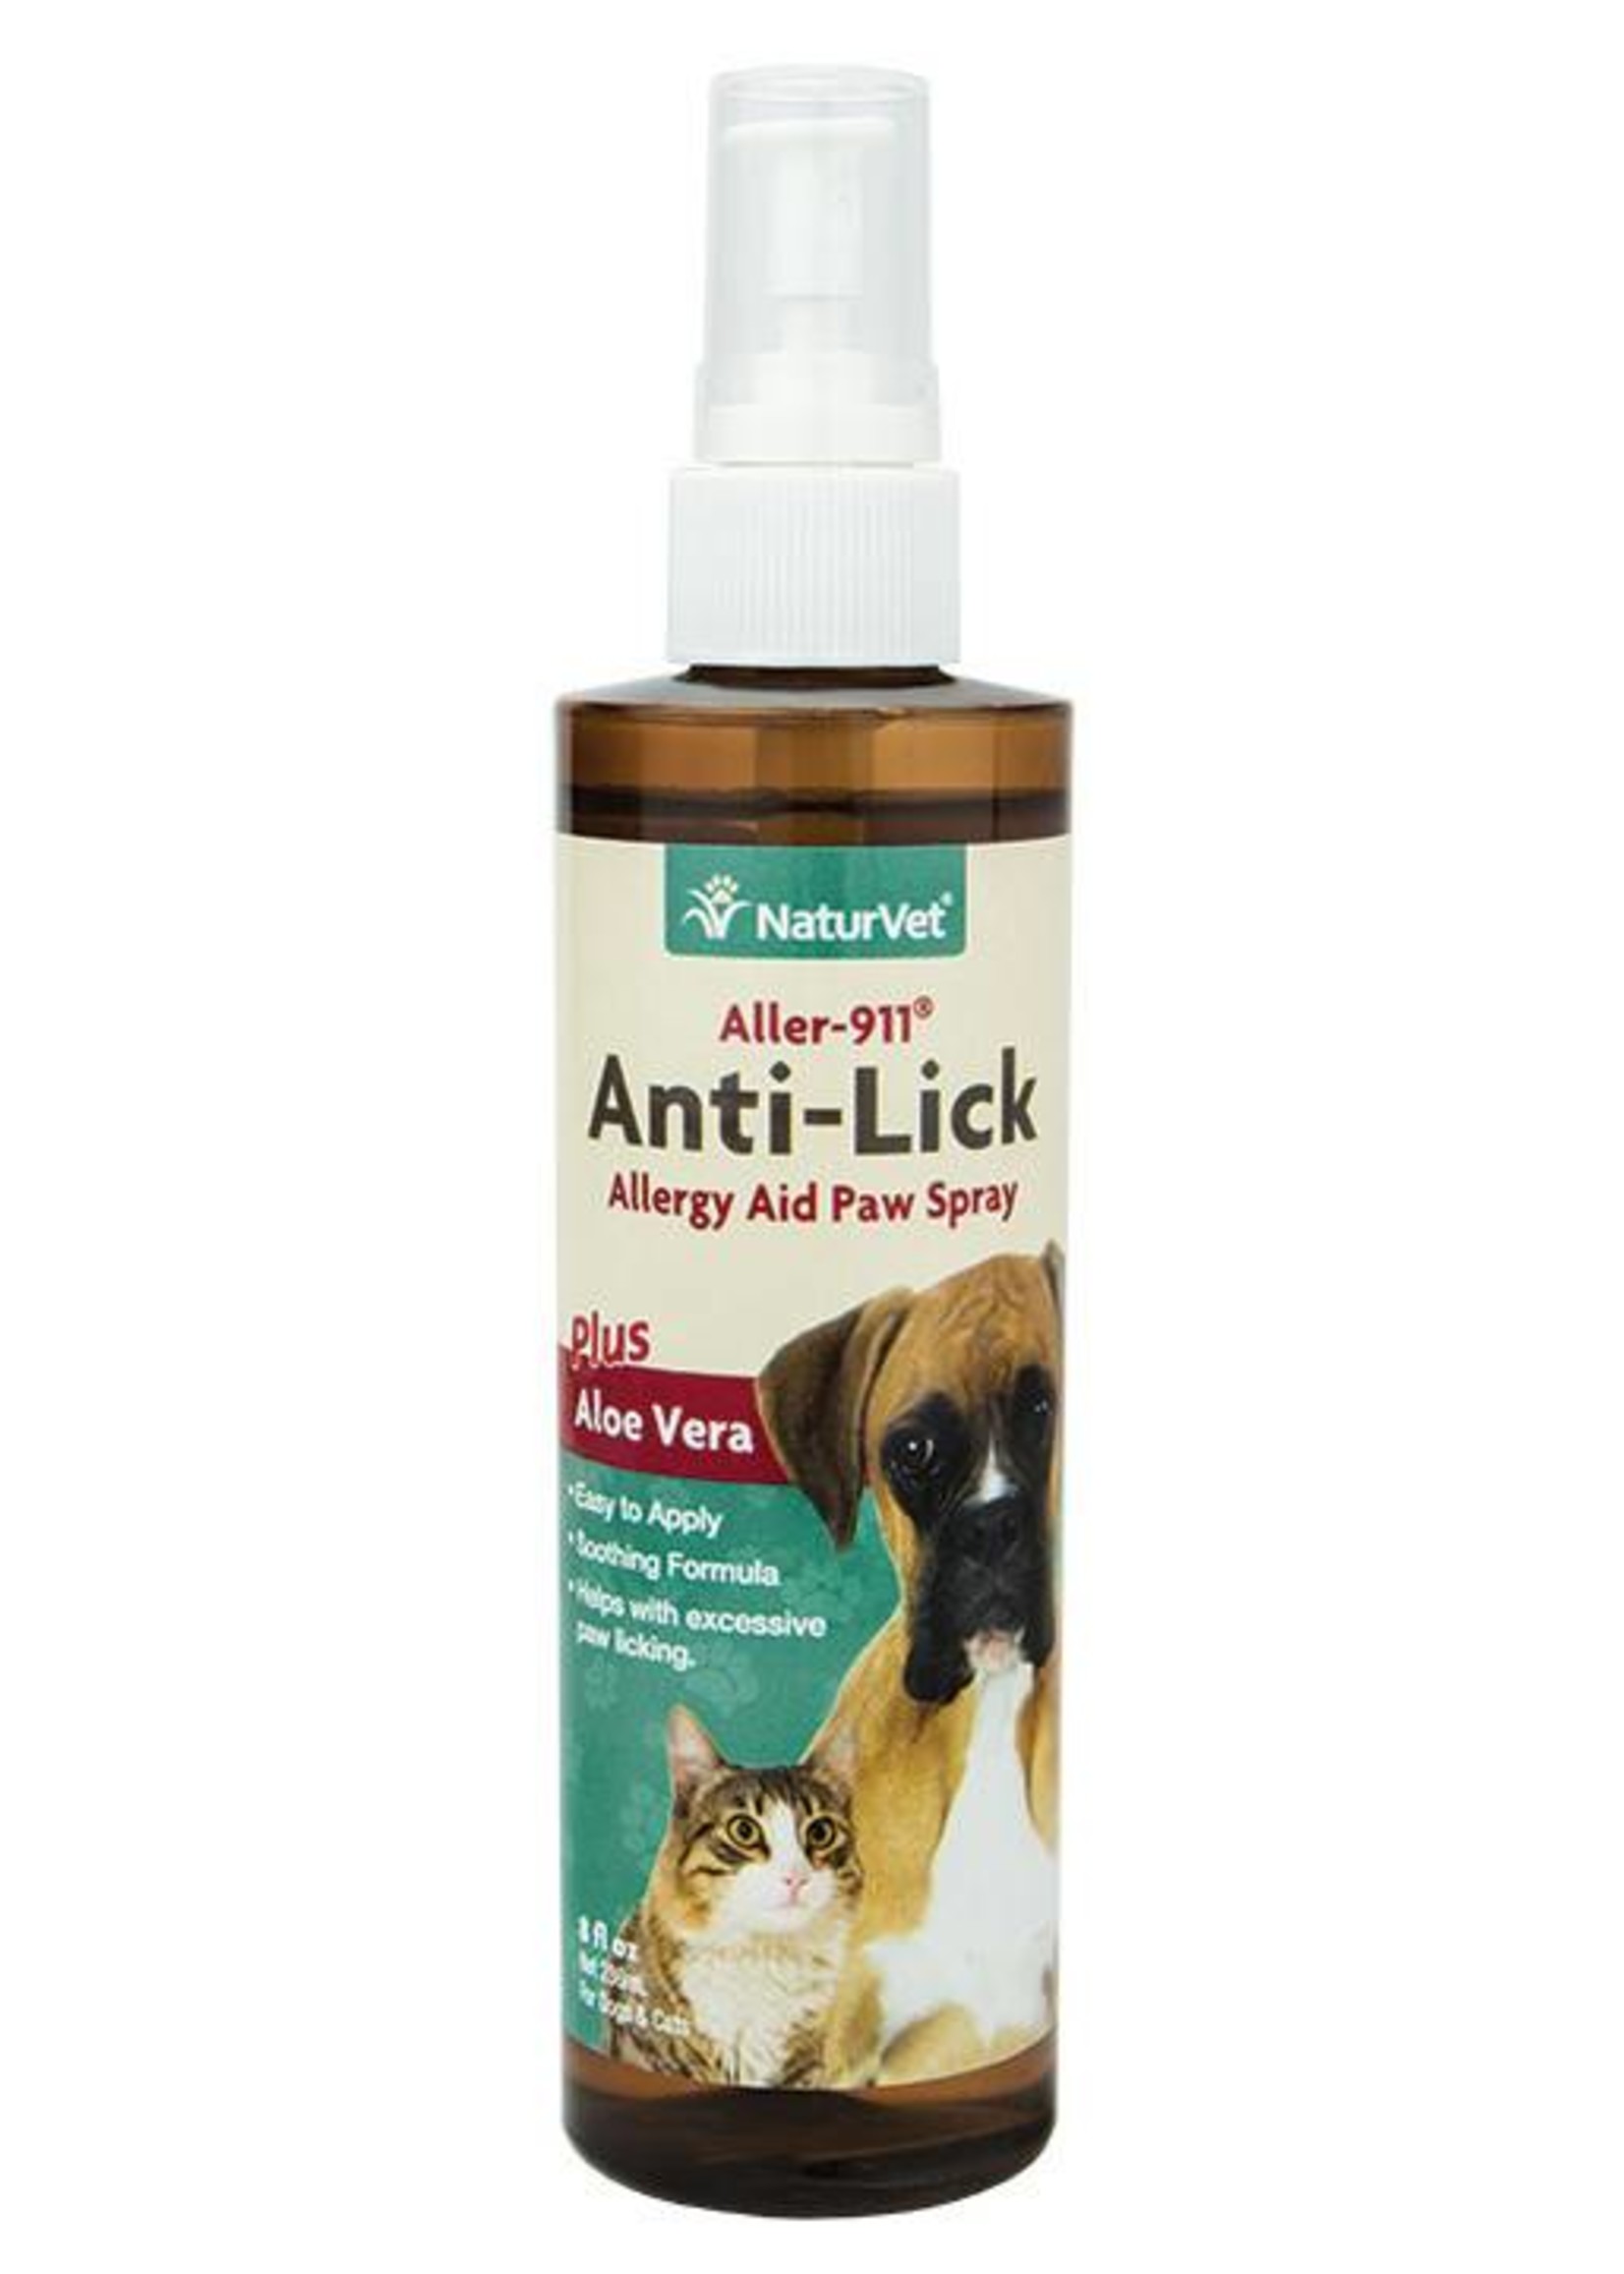 NaturVet Anti-Lick Paw Spray